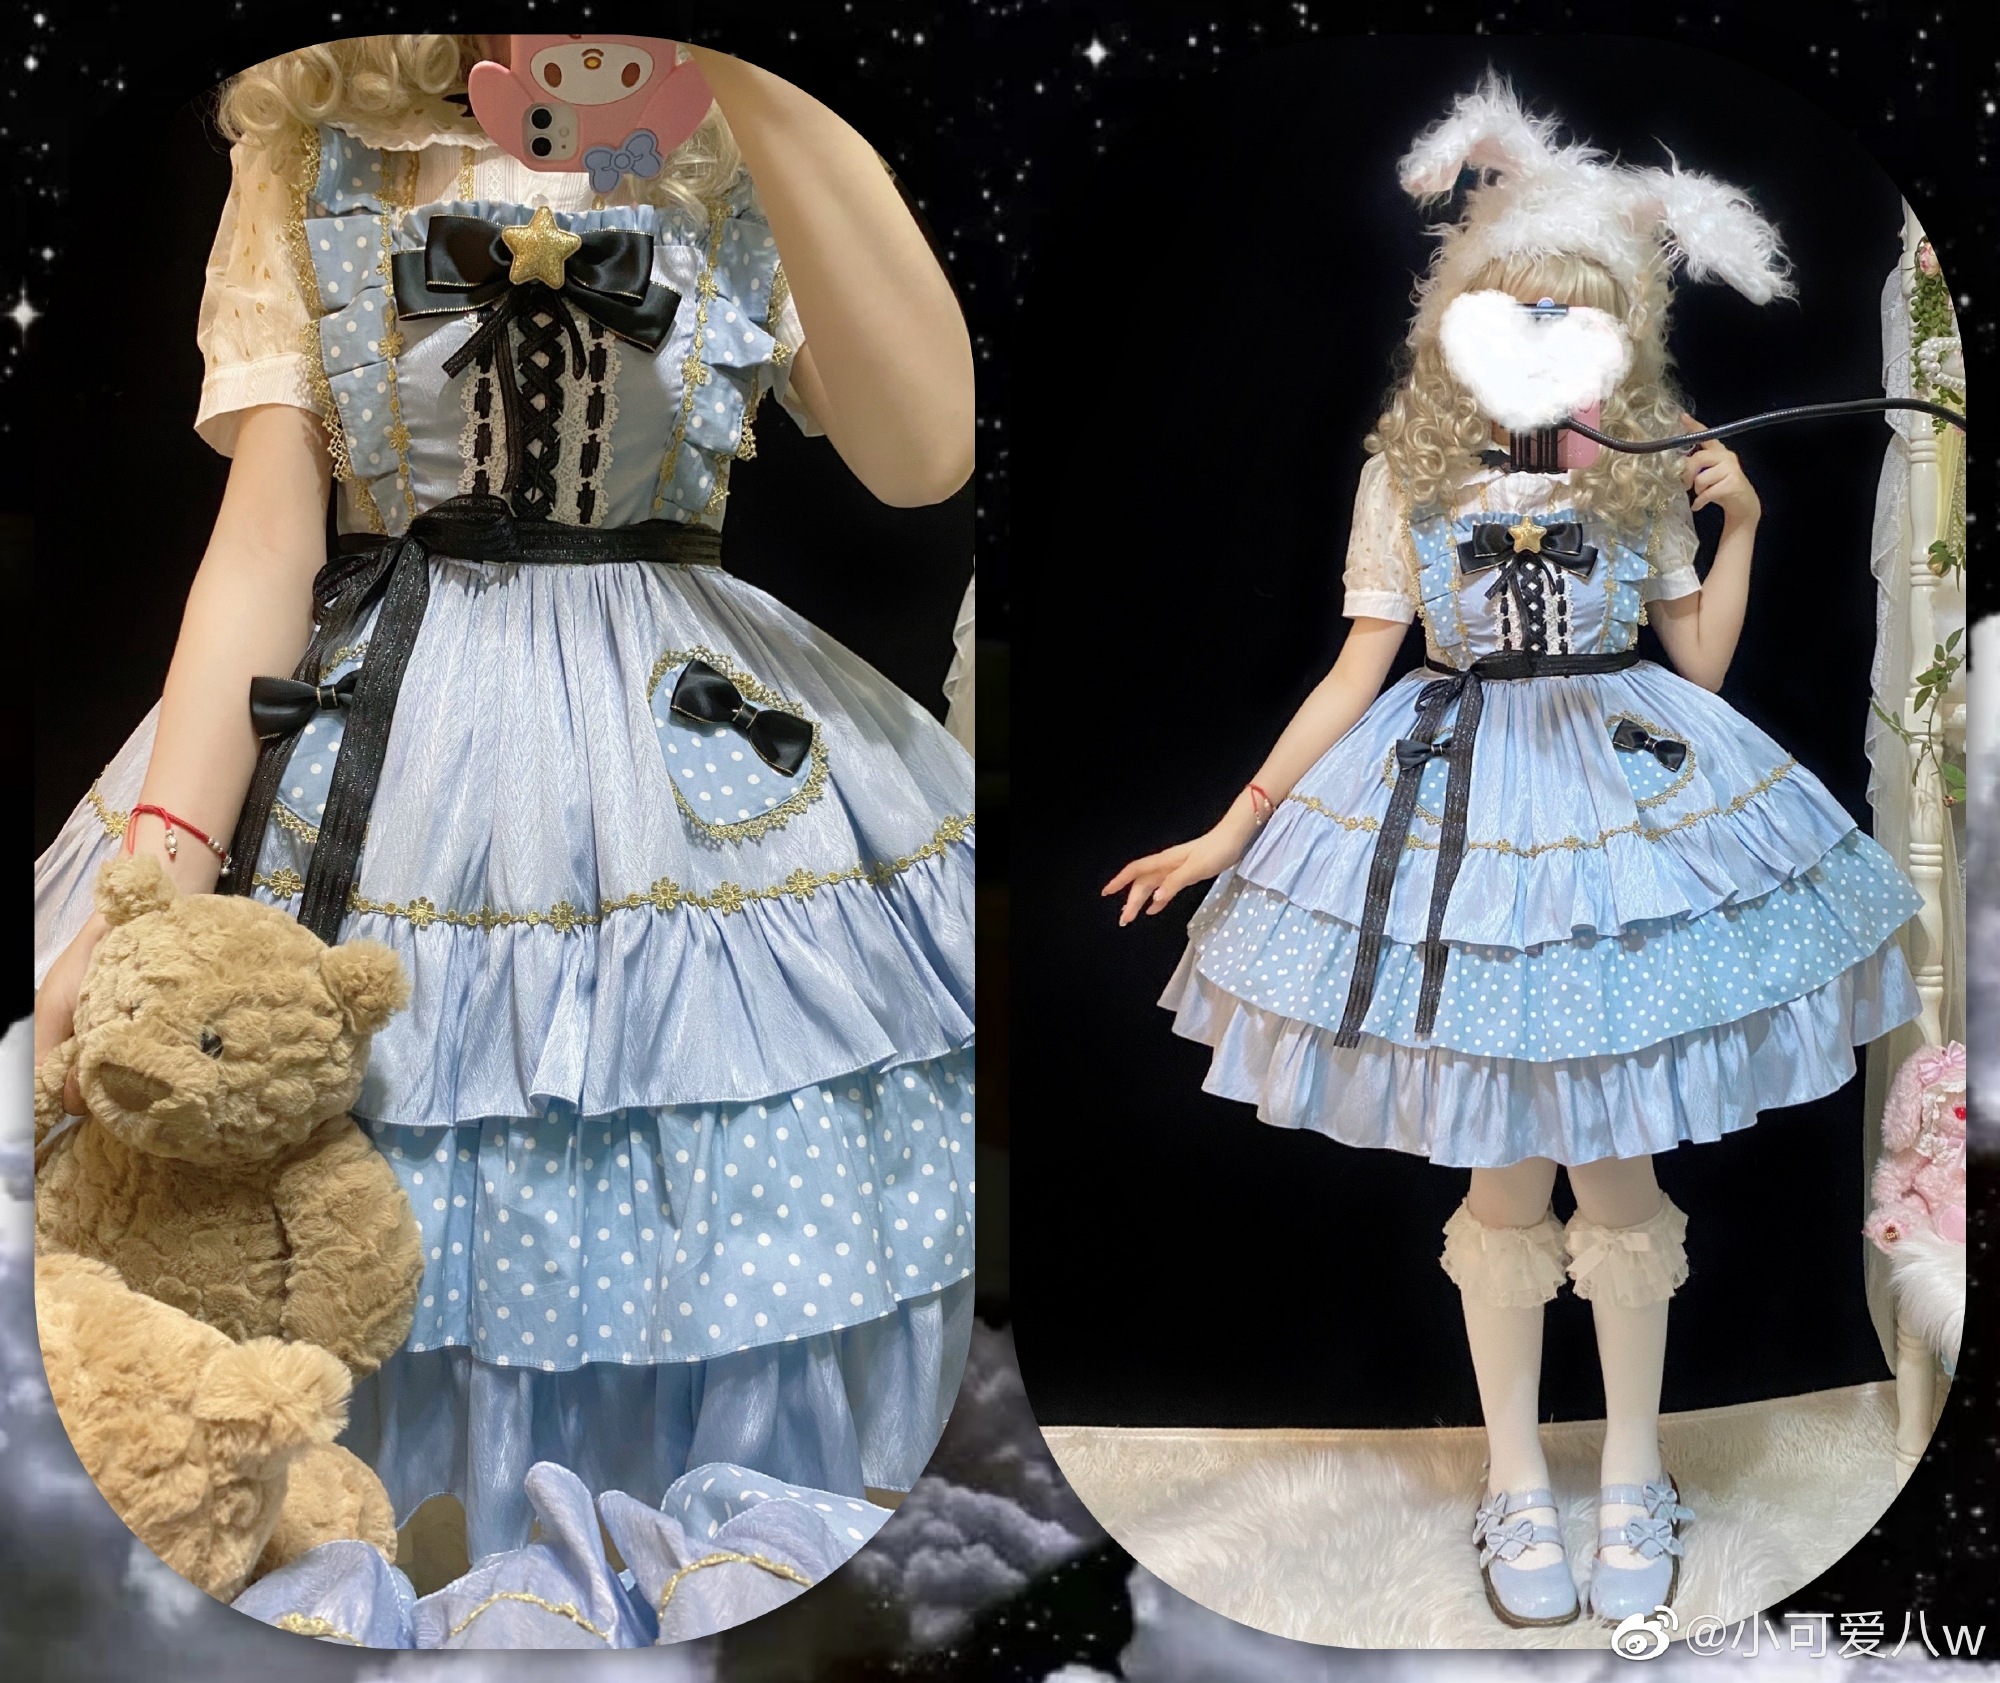 【现货】 奇妙物语jsk 三段波点拼接连衣裙 原创lolita 洋装